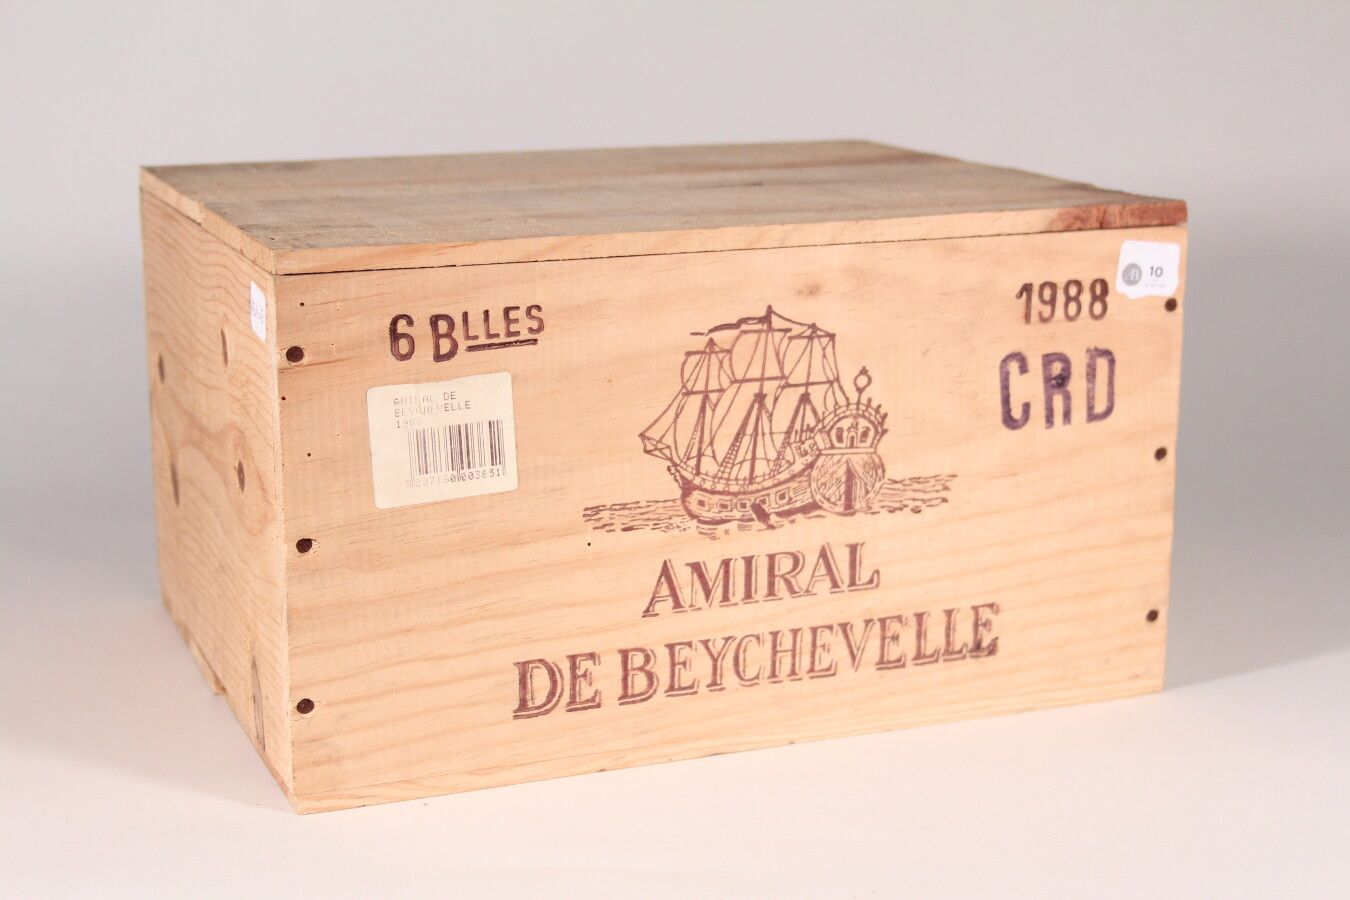 Null 1988 - Amiral de Beychevelle

Saint-Julien Rojo - 6 blles CBO